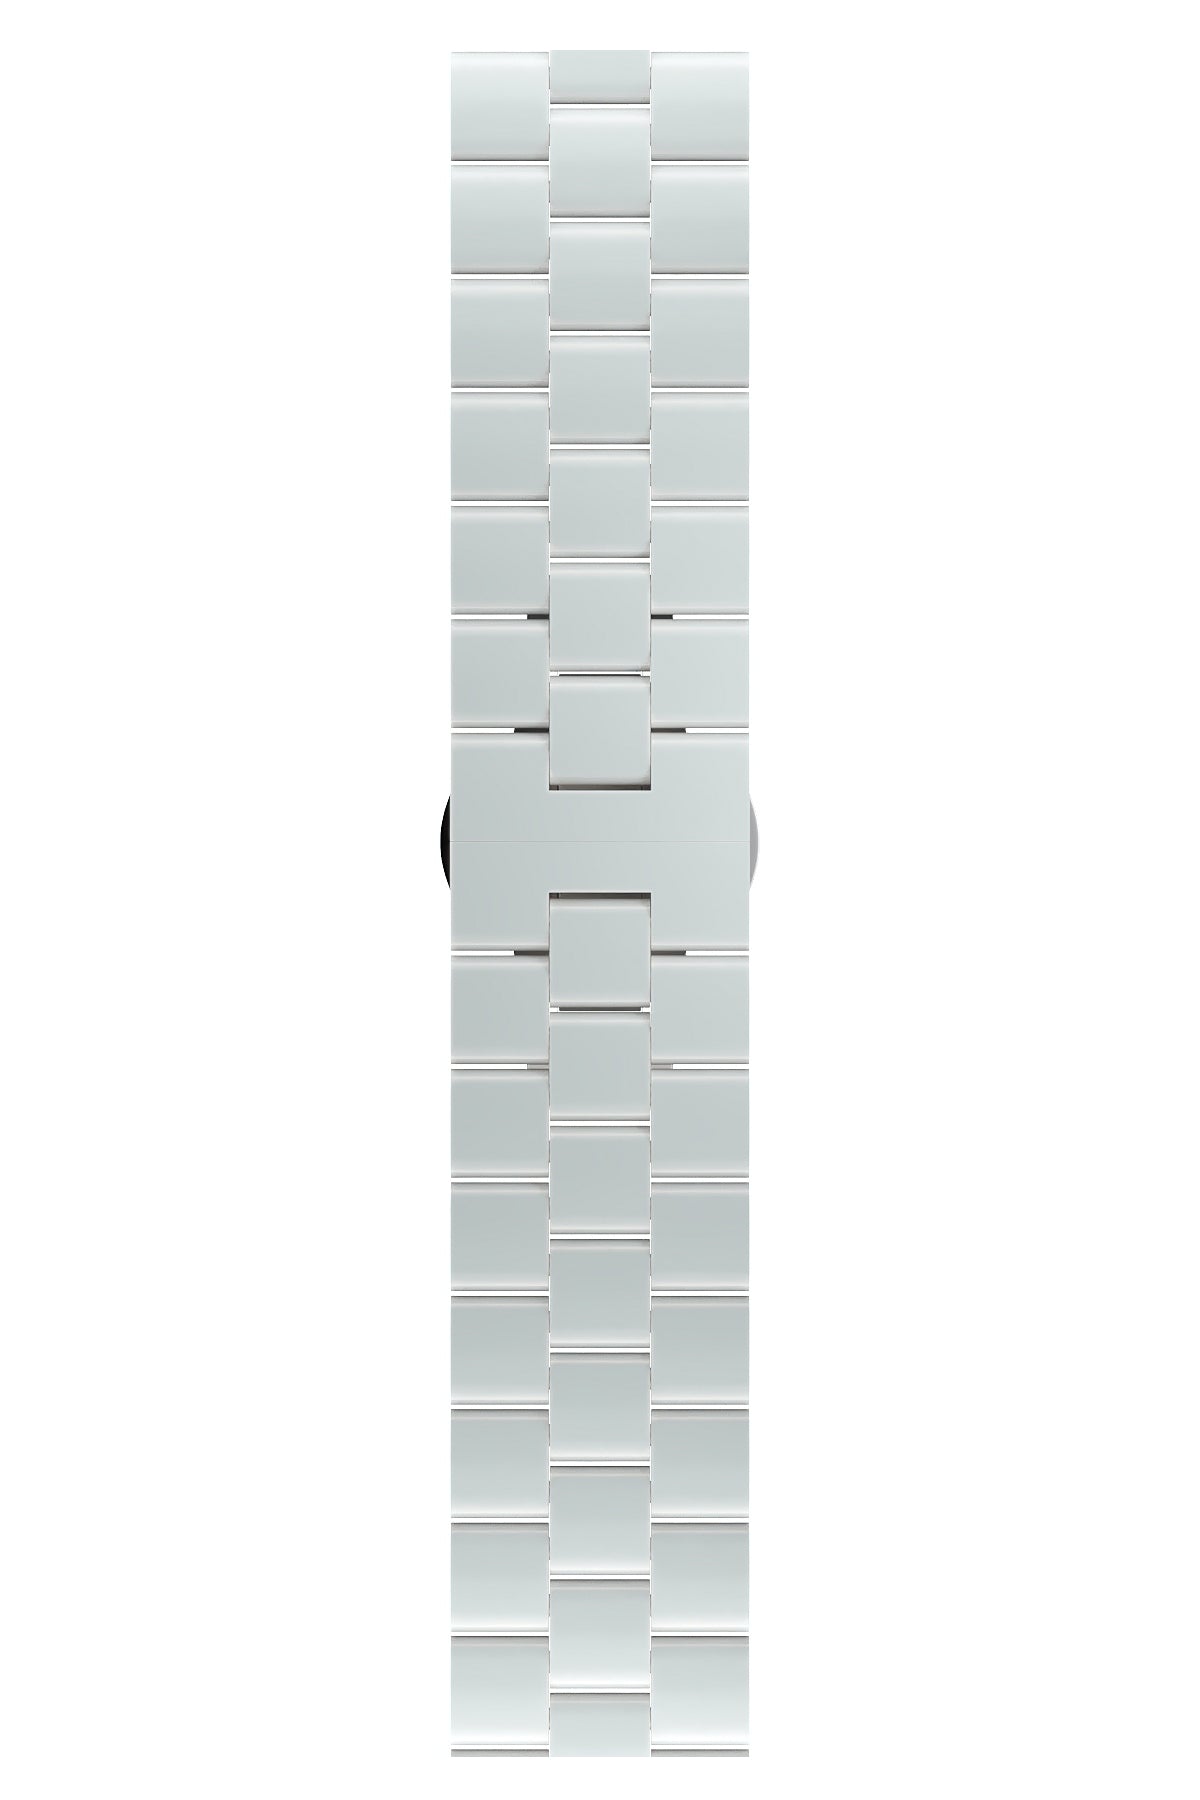 Apple Watch Uyumlu Üç Bakla Seramik Loop Kordon Beyaz